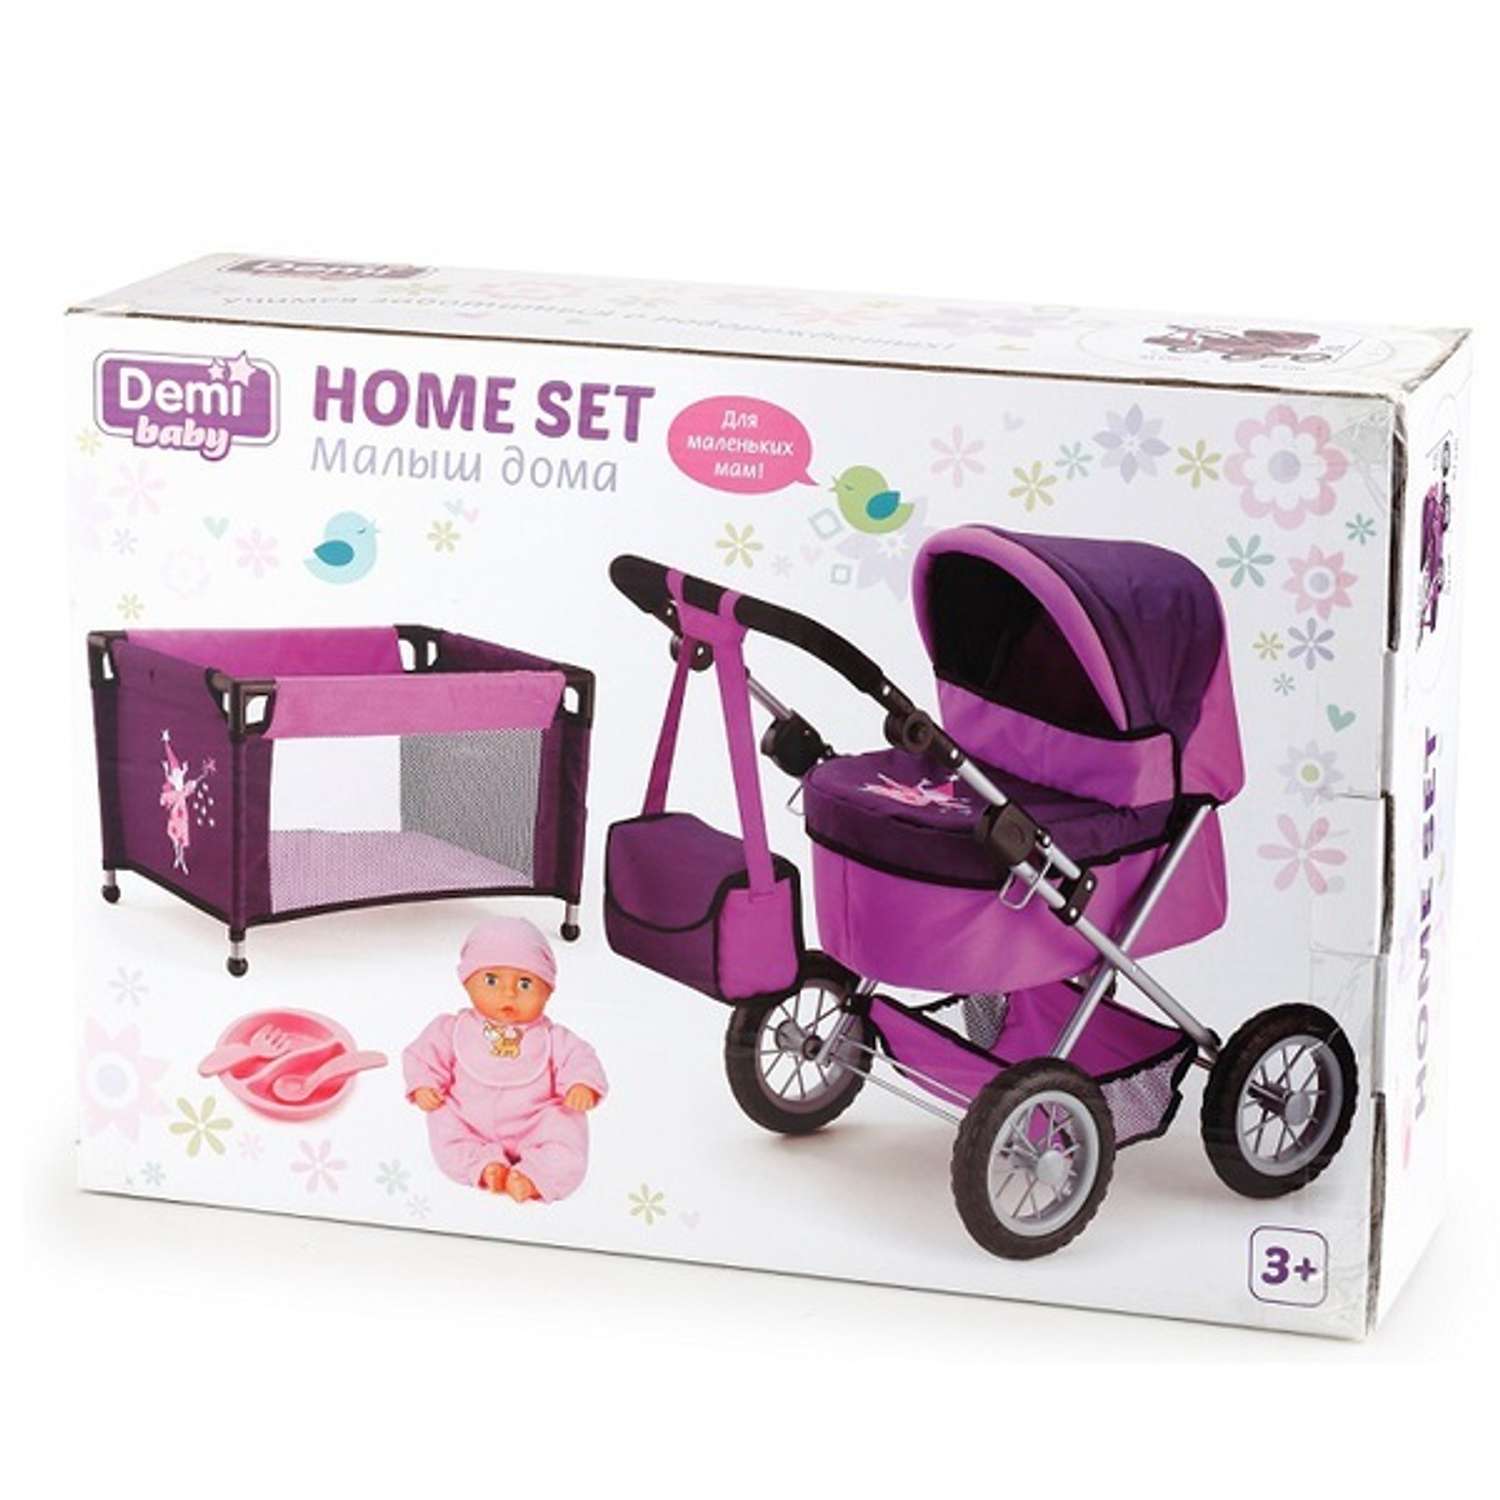 Коляска для кукол star. Коляска для куклы Demi Baby Home Set. Demi Star кукла с коляской и кроваткой. Коляска двойная Demi Star. Манеж для куклы Demi Star.